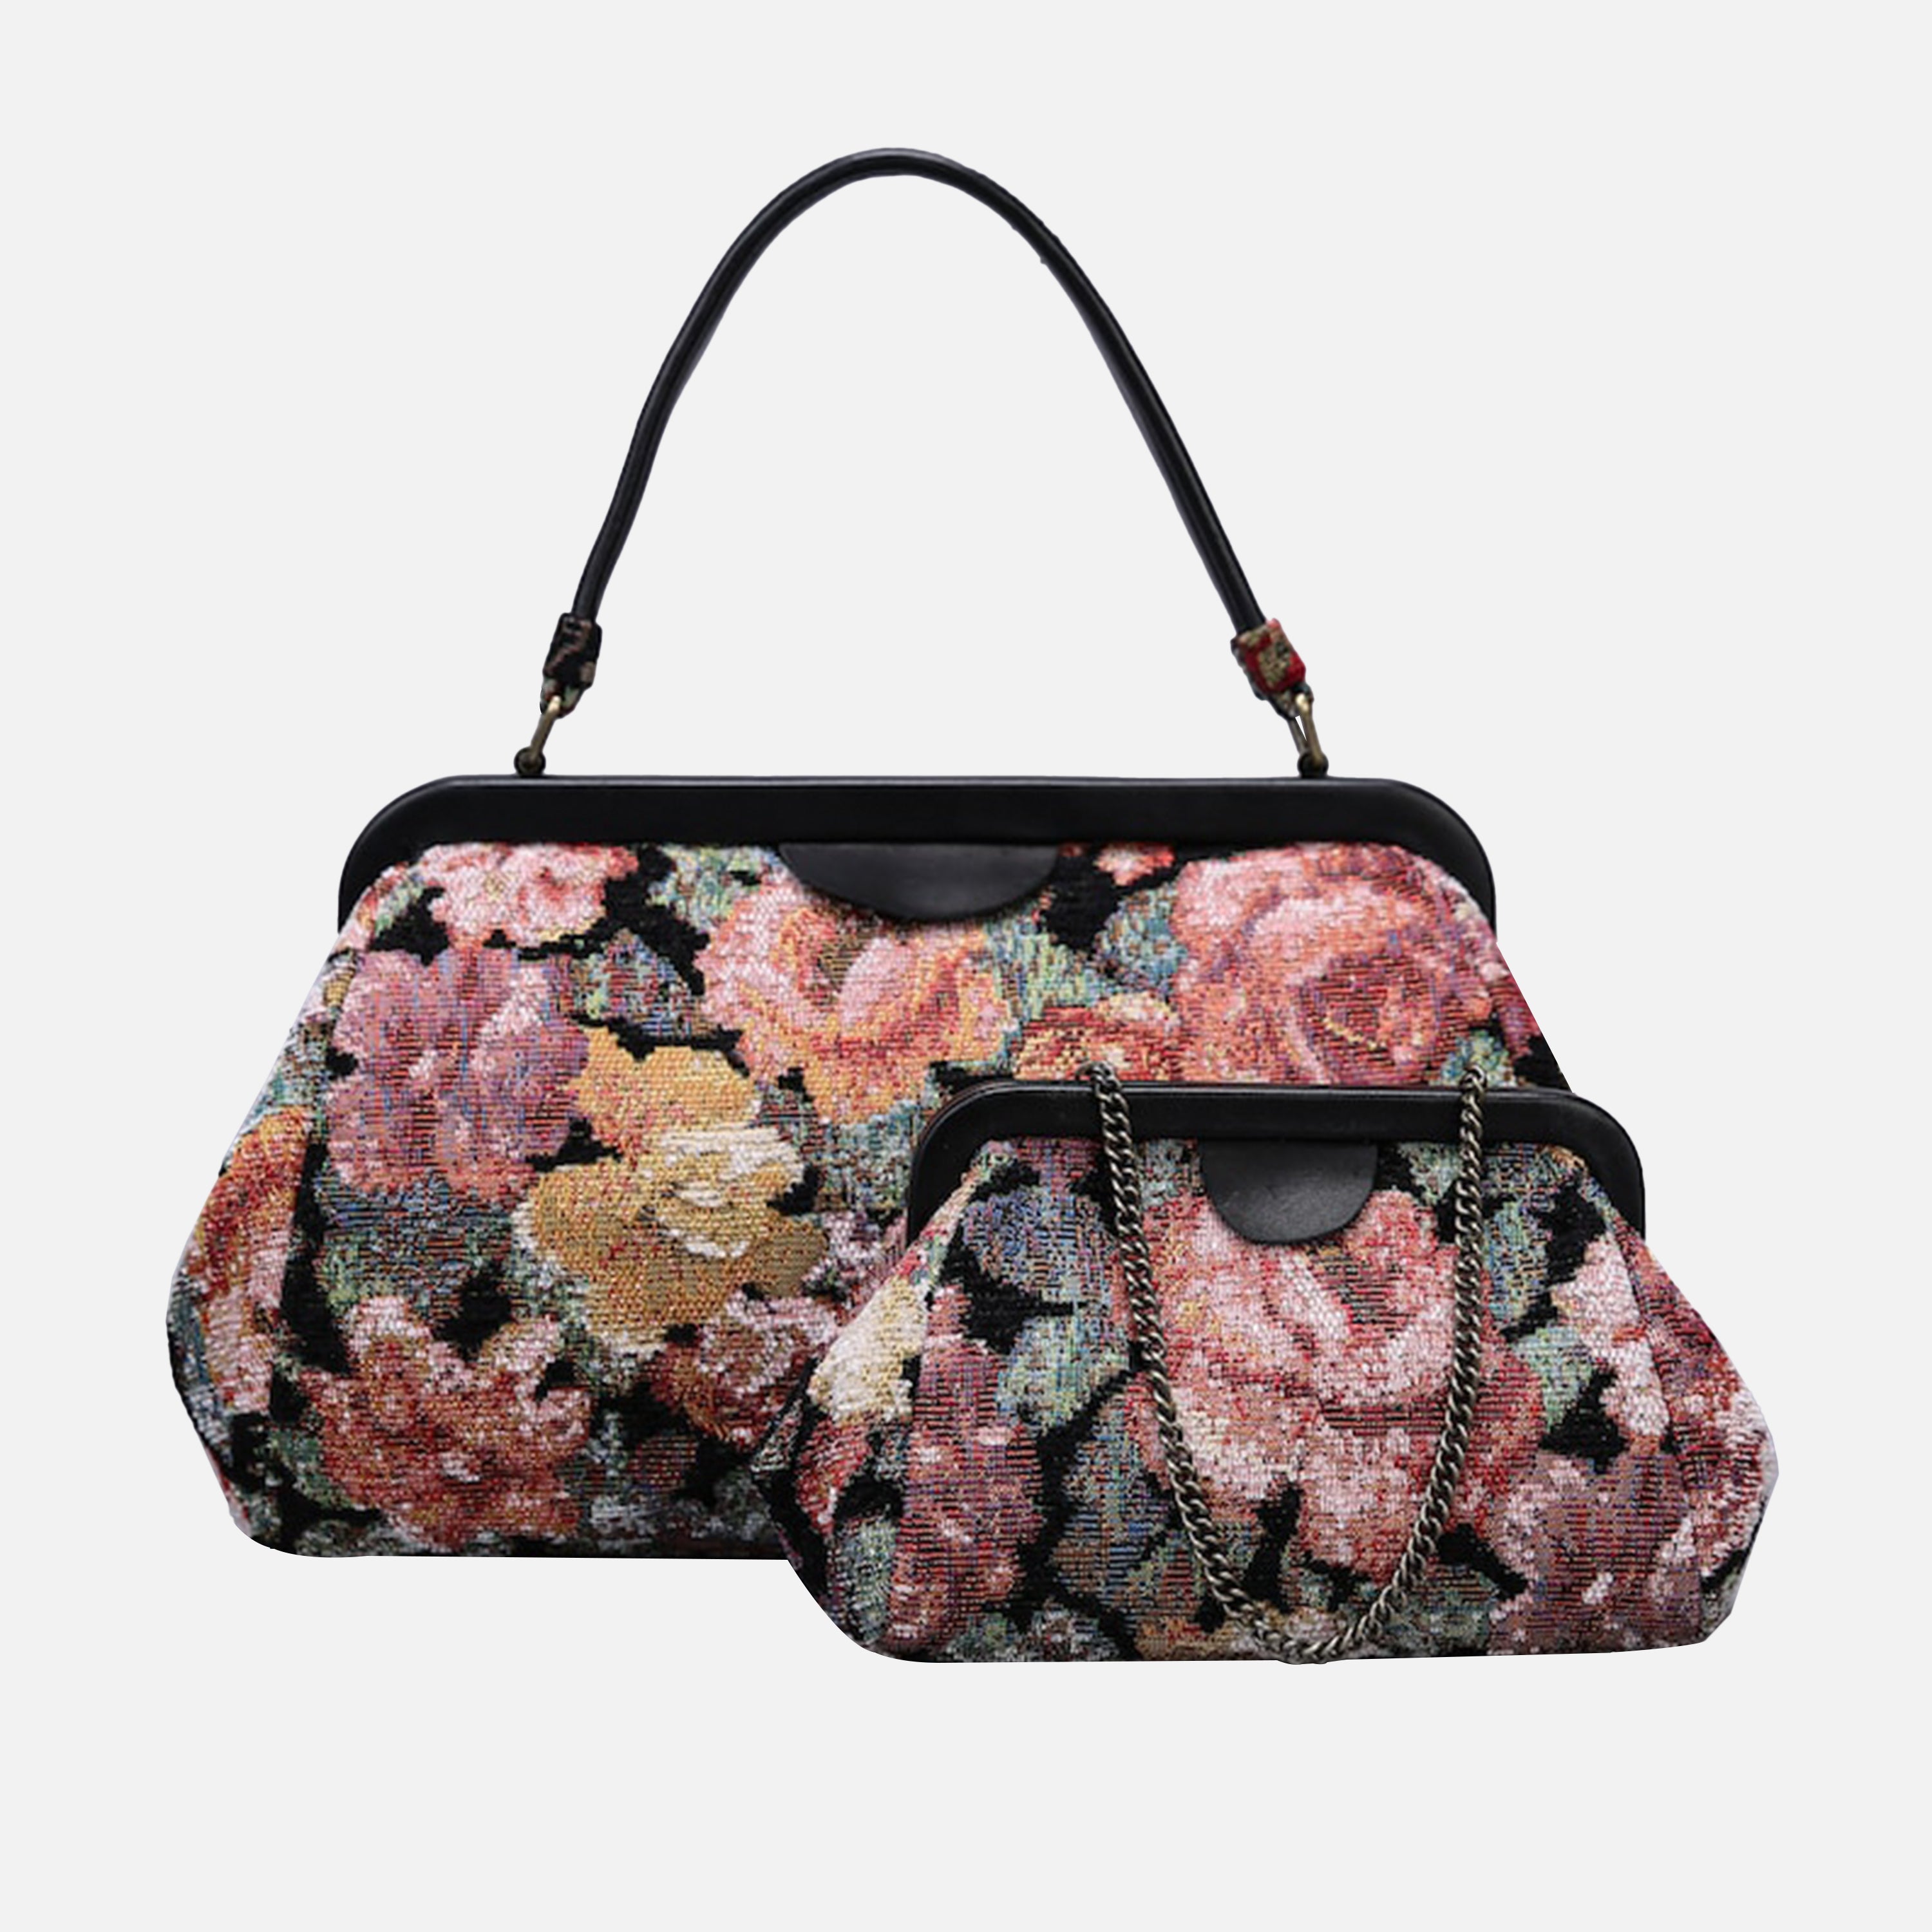 Floral Rose Evening Bag Clutch carpet bag MCW Handmade-6